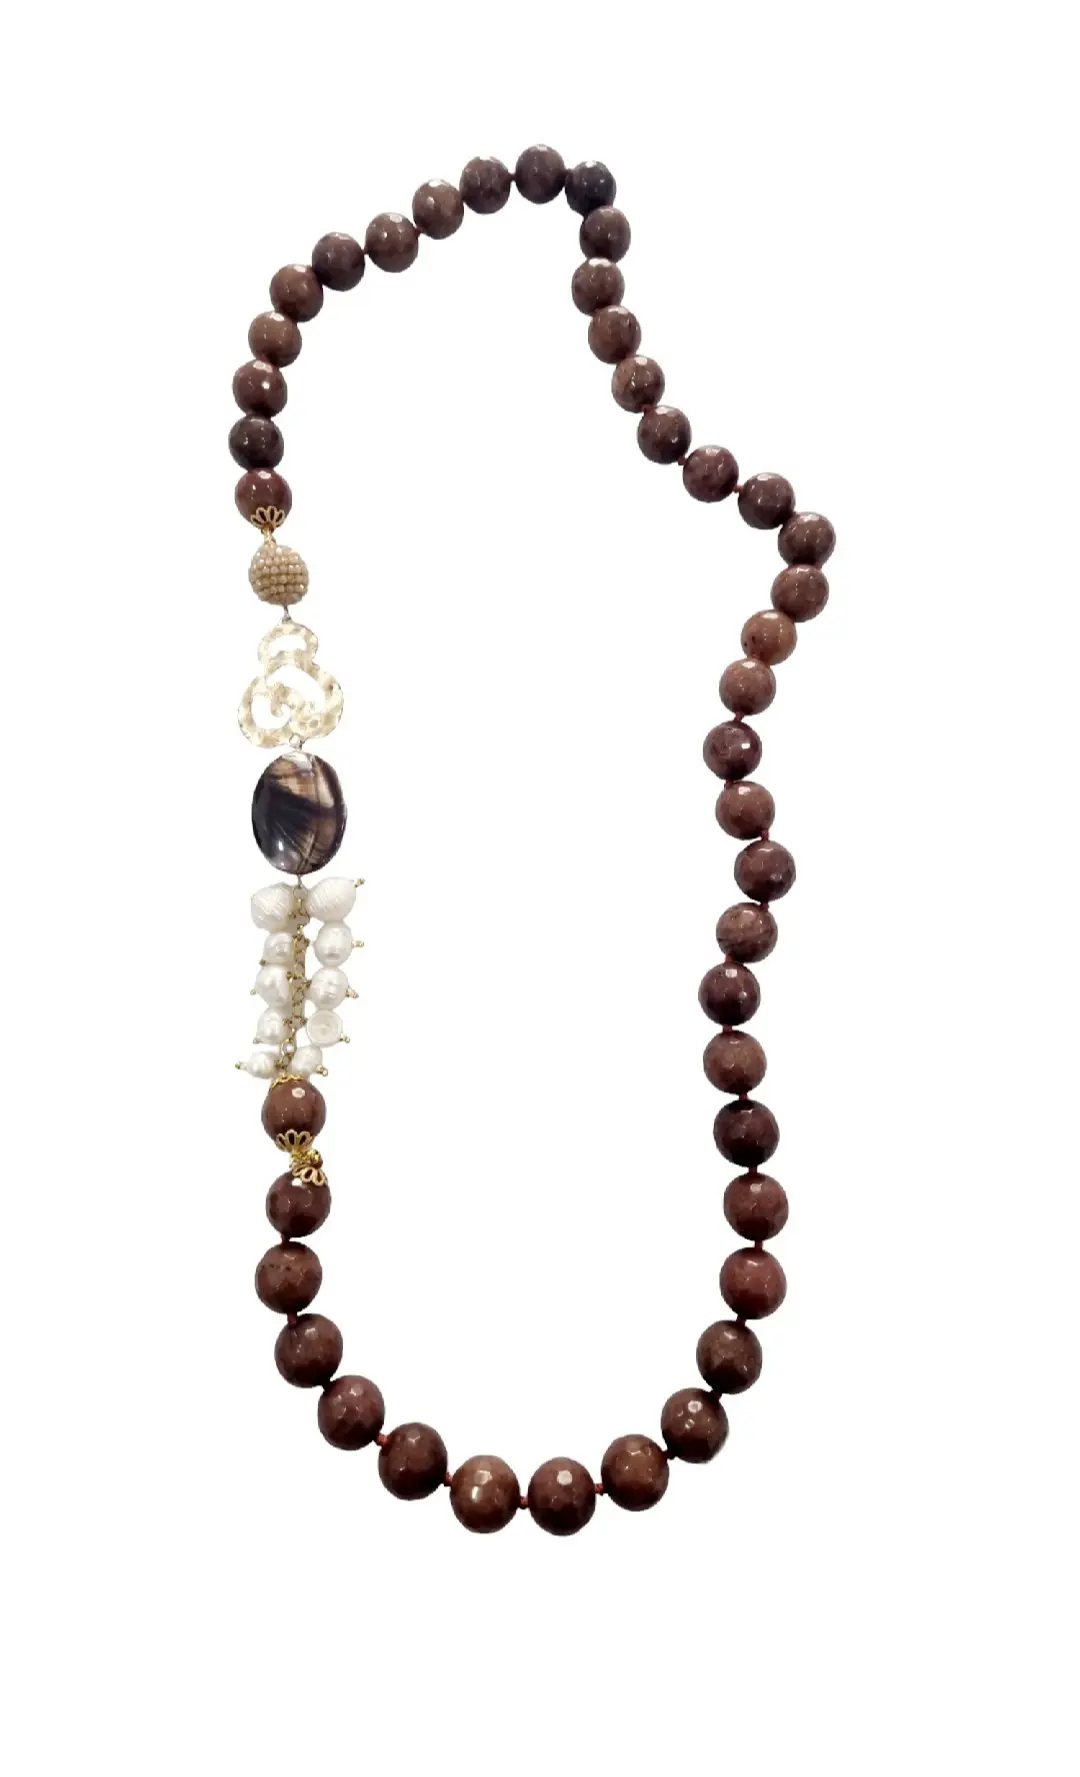 Halskette aus braunem Achat, Flussperlen, Perlmutt, Messing und Kristallen – Länge 78 cm